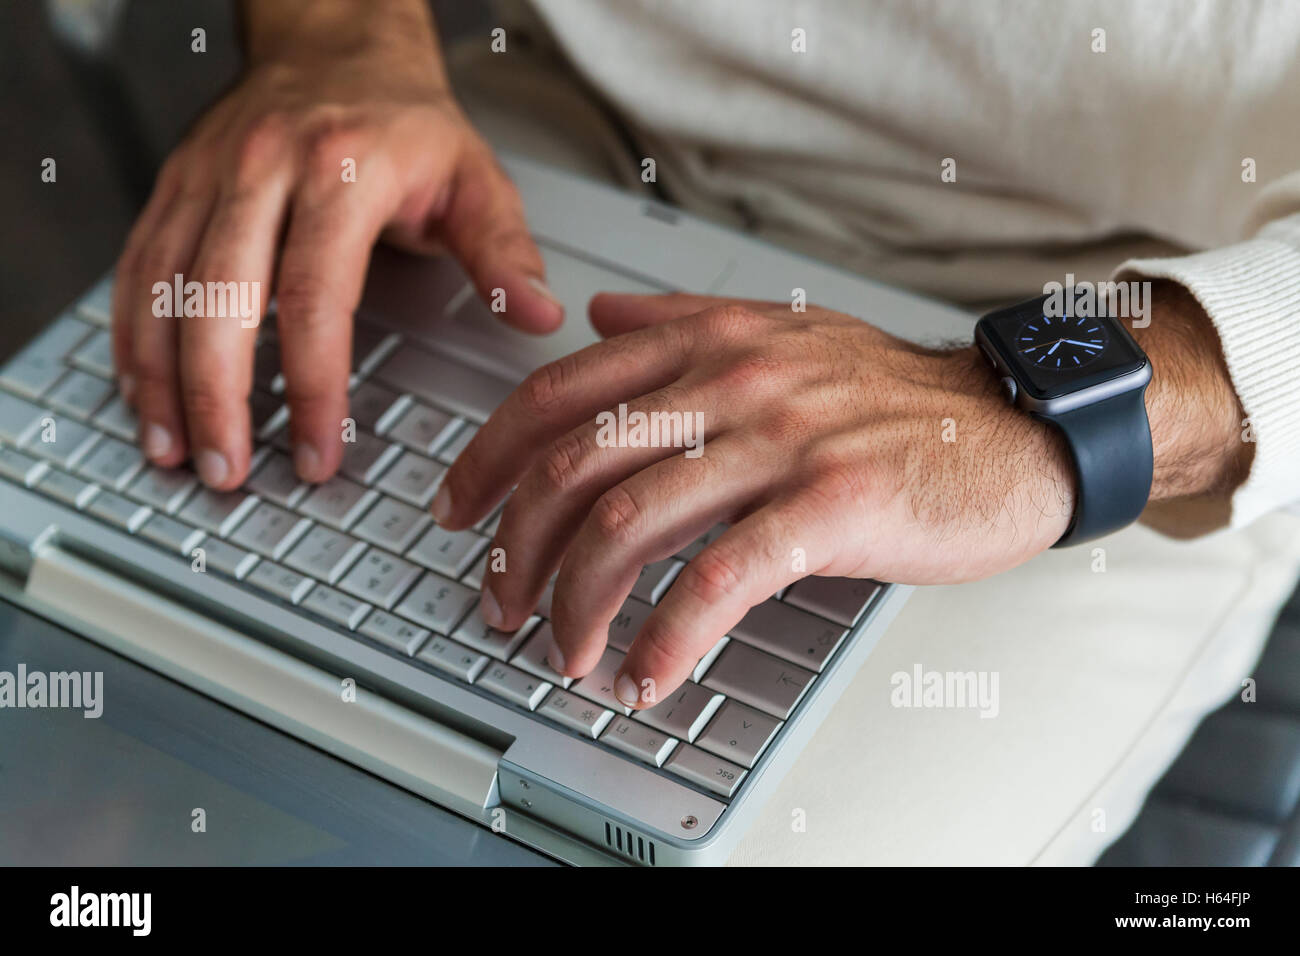 Man's hands using laptop, close-up Banque D'Images